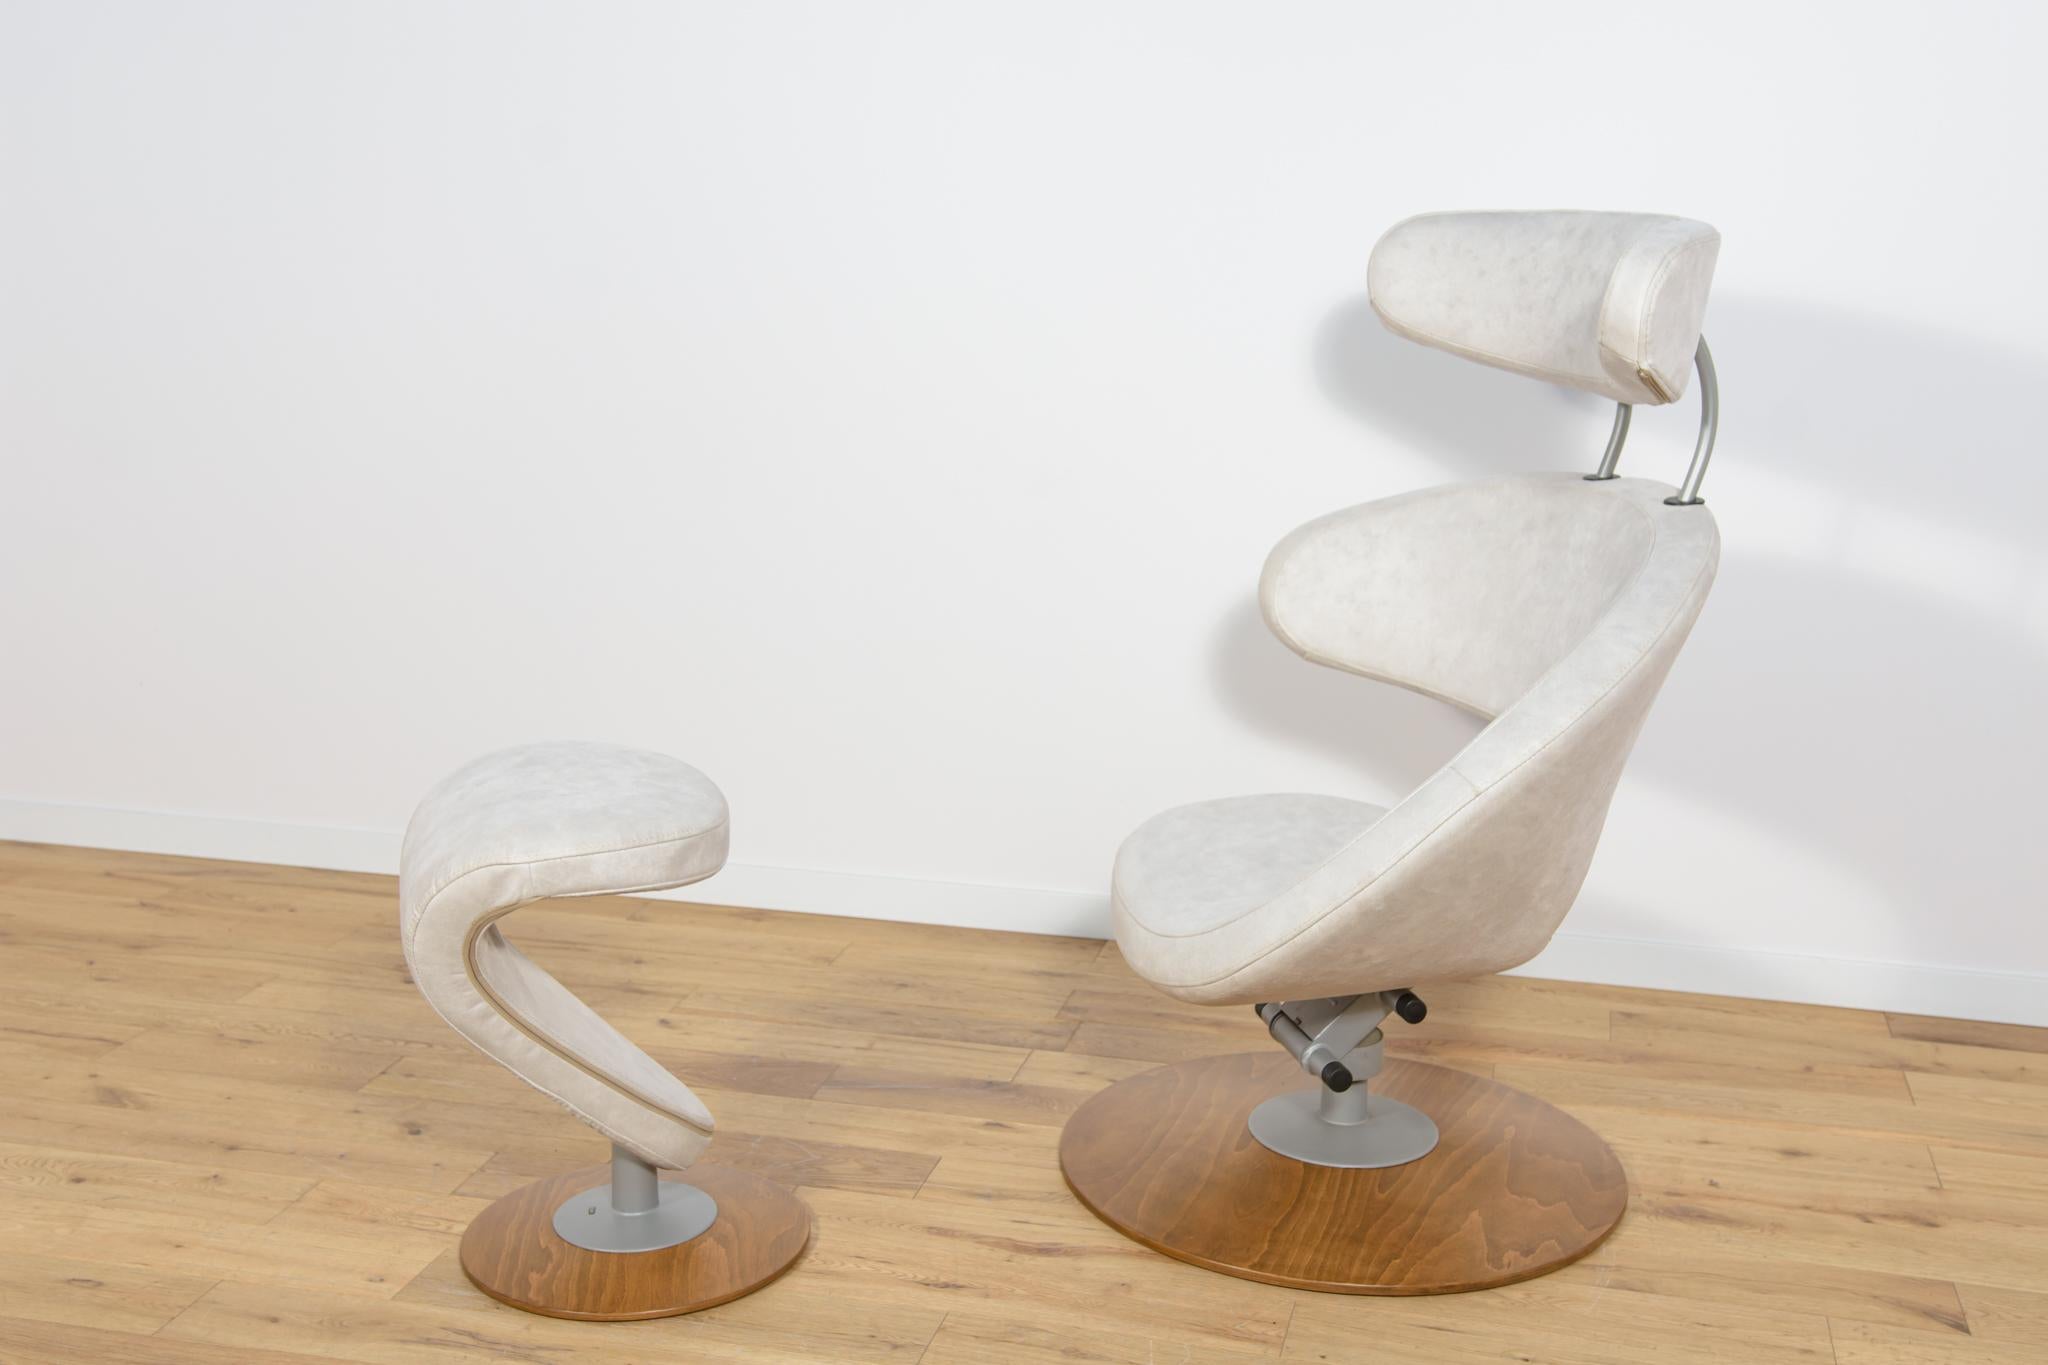 Fauteuil et pouf ergonomiques modèle Peel conçus par Olav Eldoy pour l'usine norvégienne Stokke dans la première décennie du XXIe siècle. Un fauteuil élégant avec une dimension sculpturale, avec une base en bois. L'ensemble a été entièrement rénové.